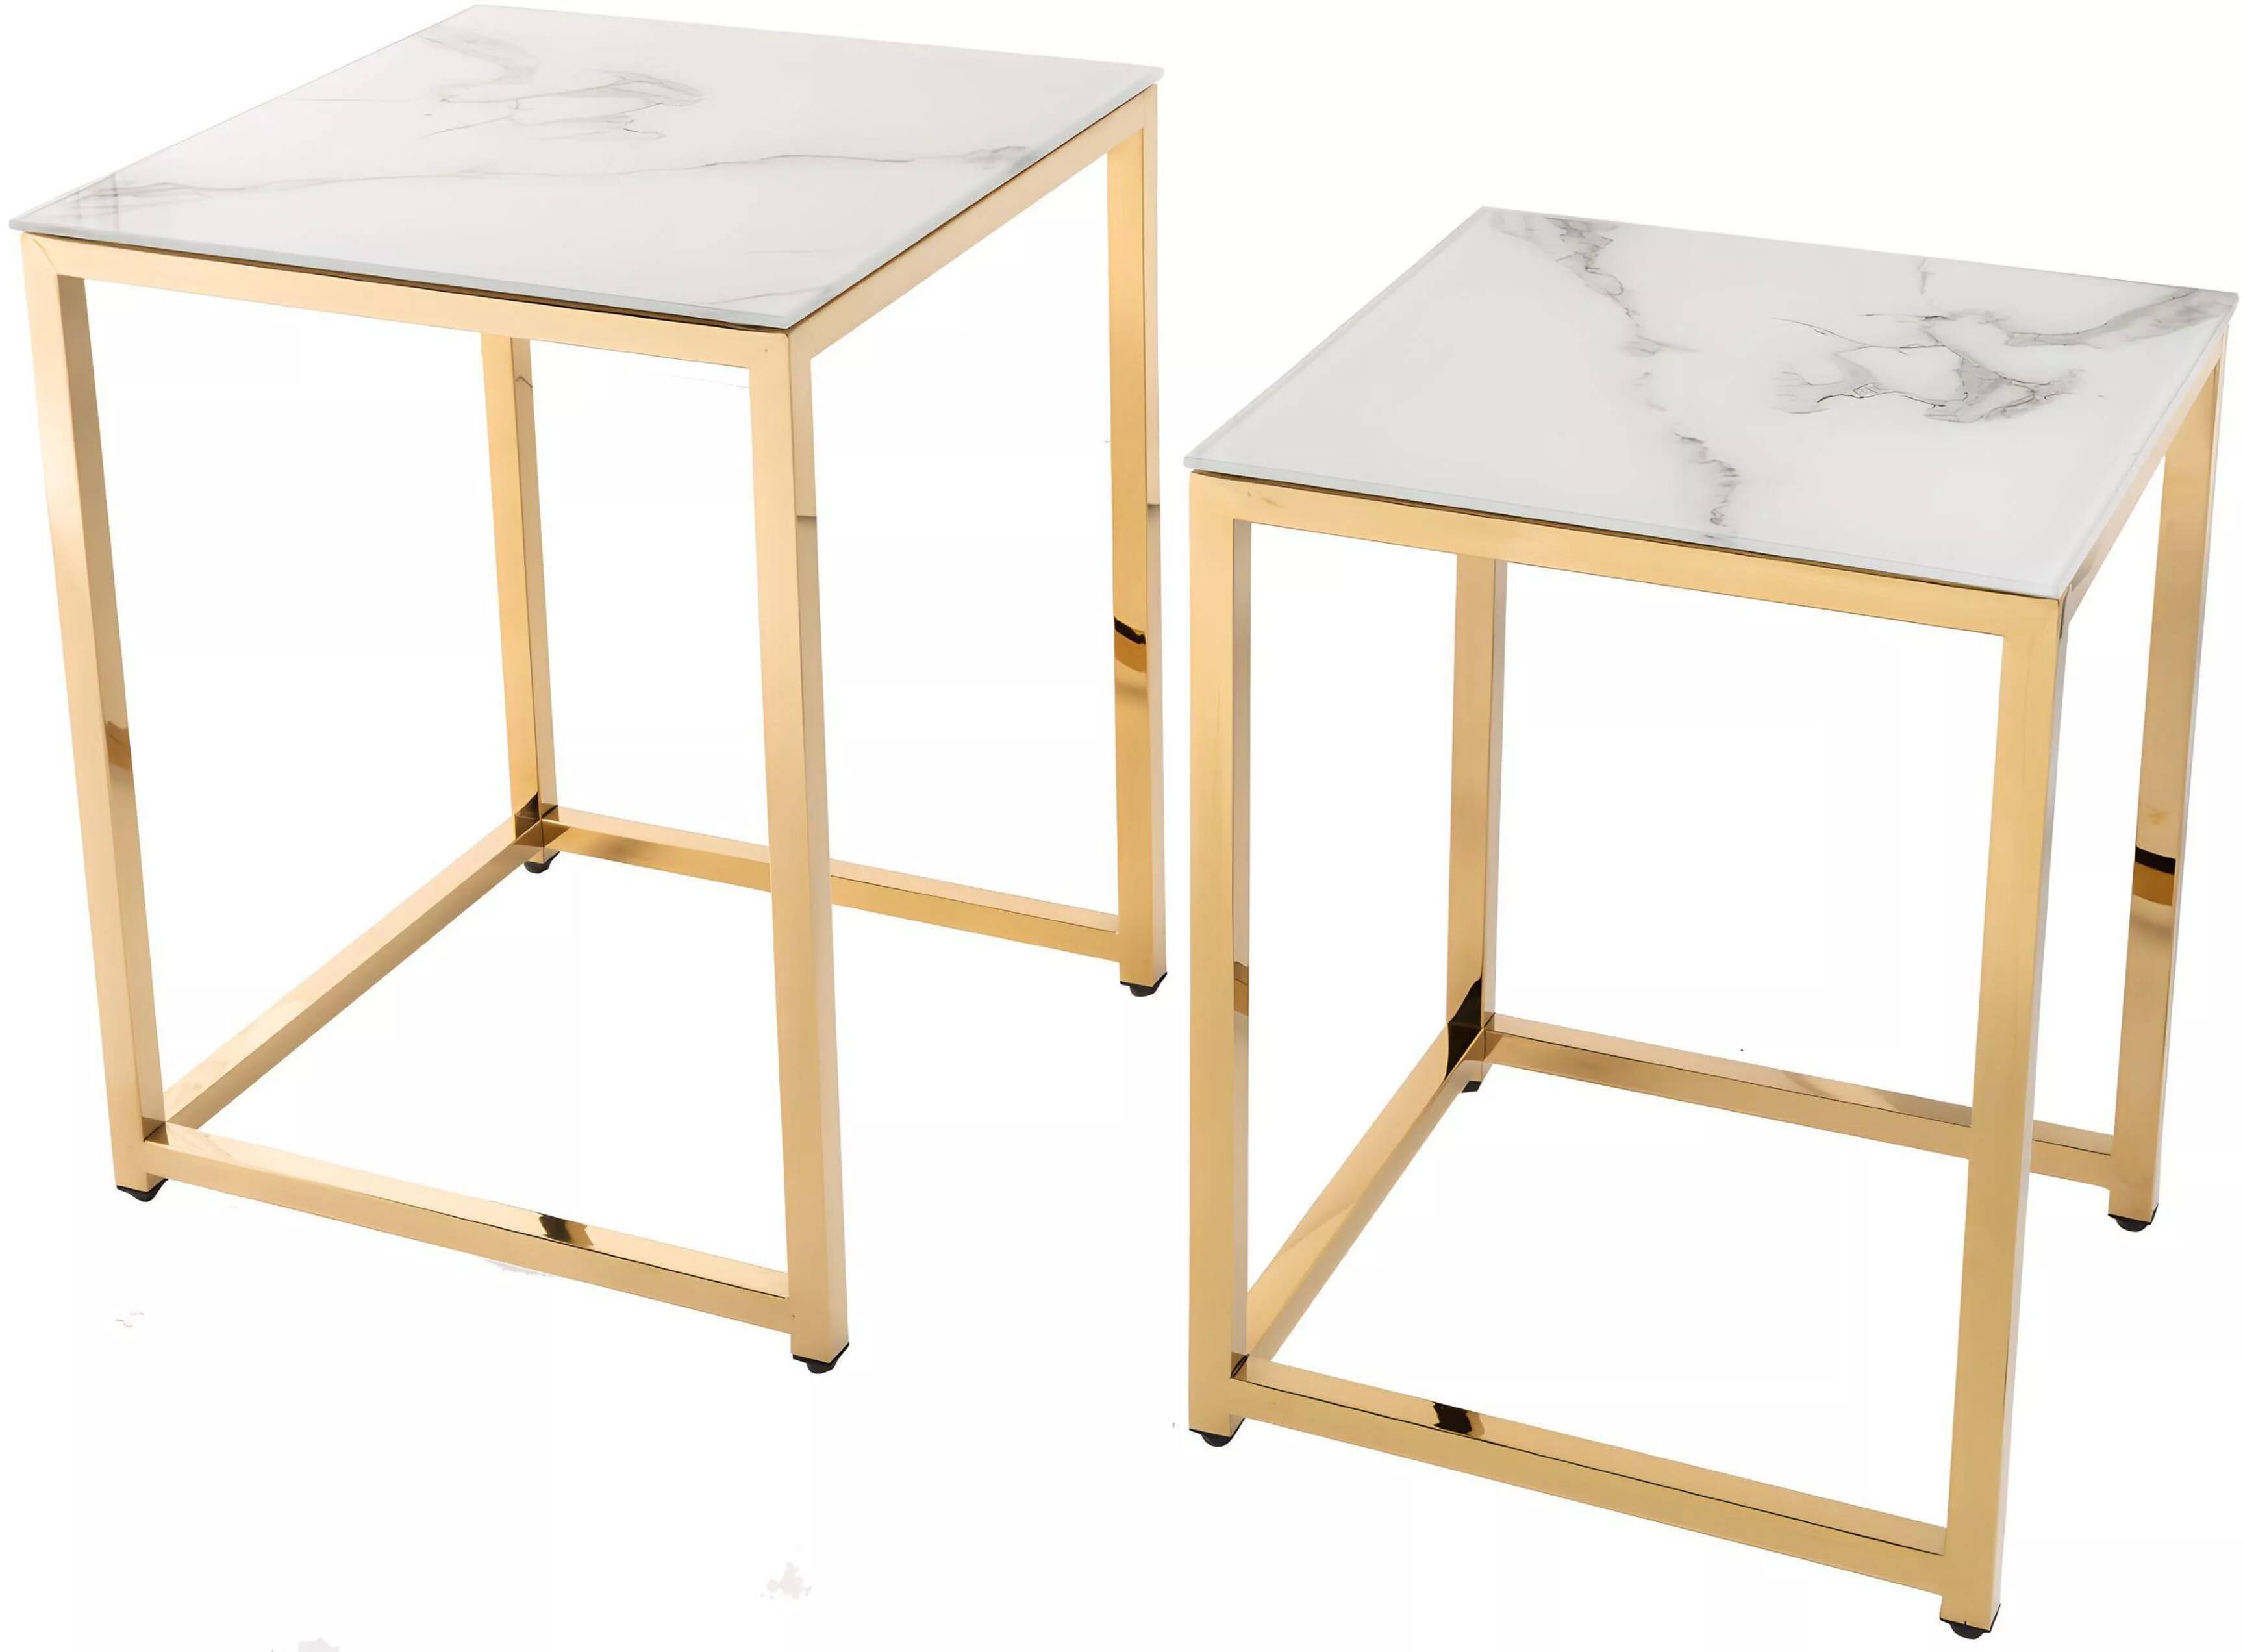 Set de 2 tables d'appoint gigognes en métal doré et verre aspect marbre blanc